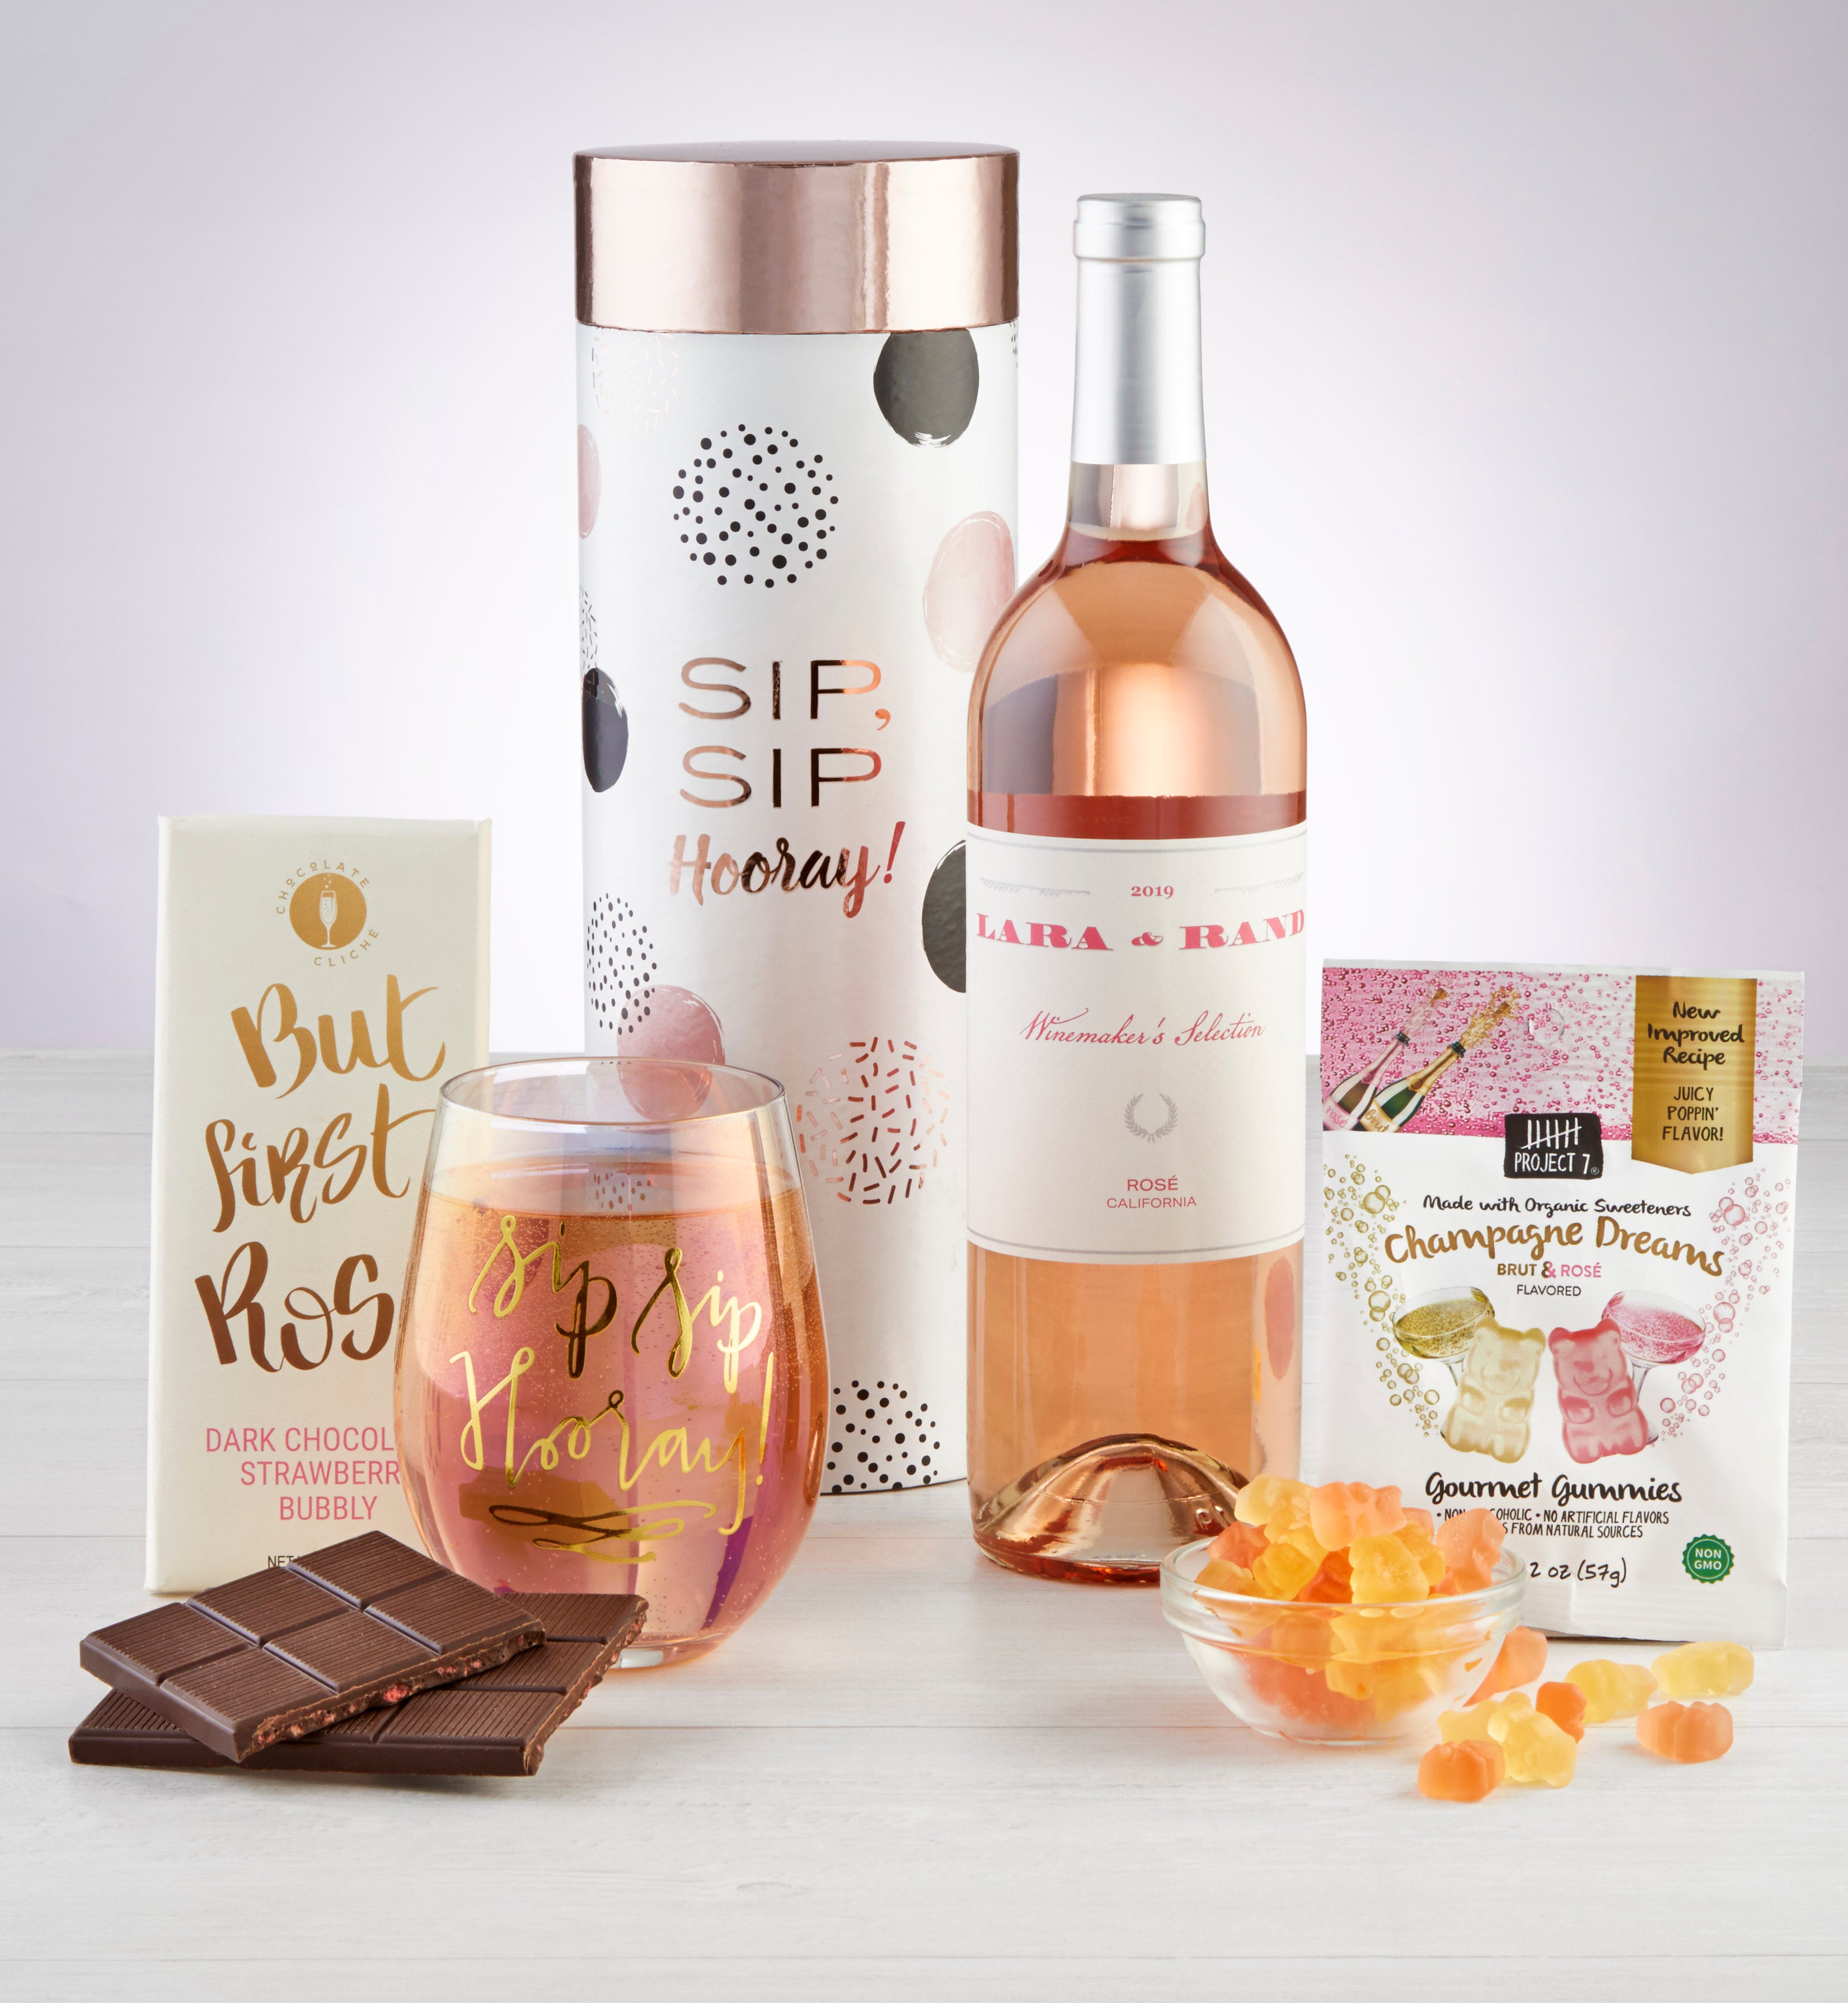 Sip Sip Hooray Rosé Wine & Glass Gift Set